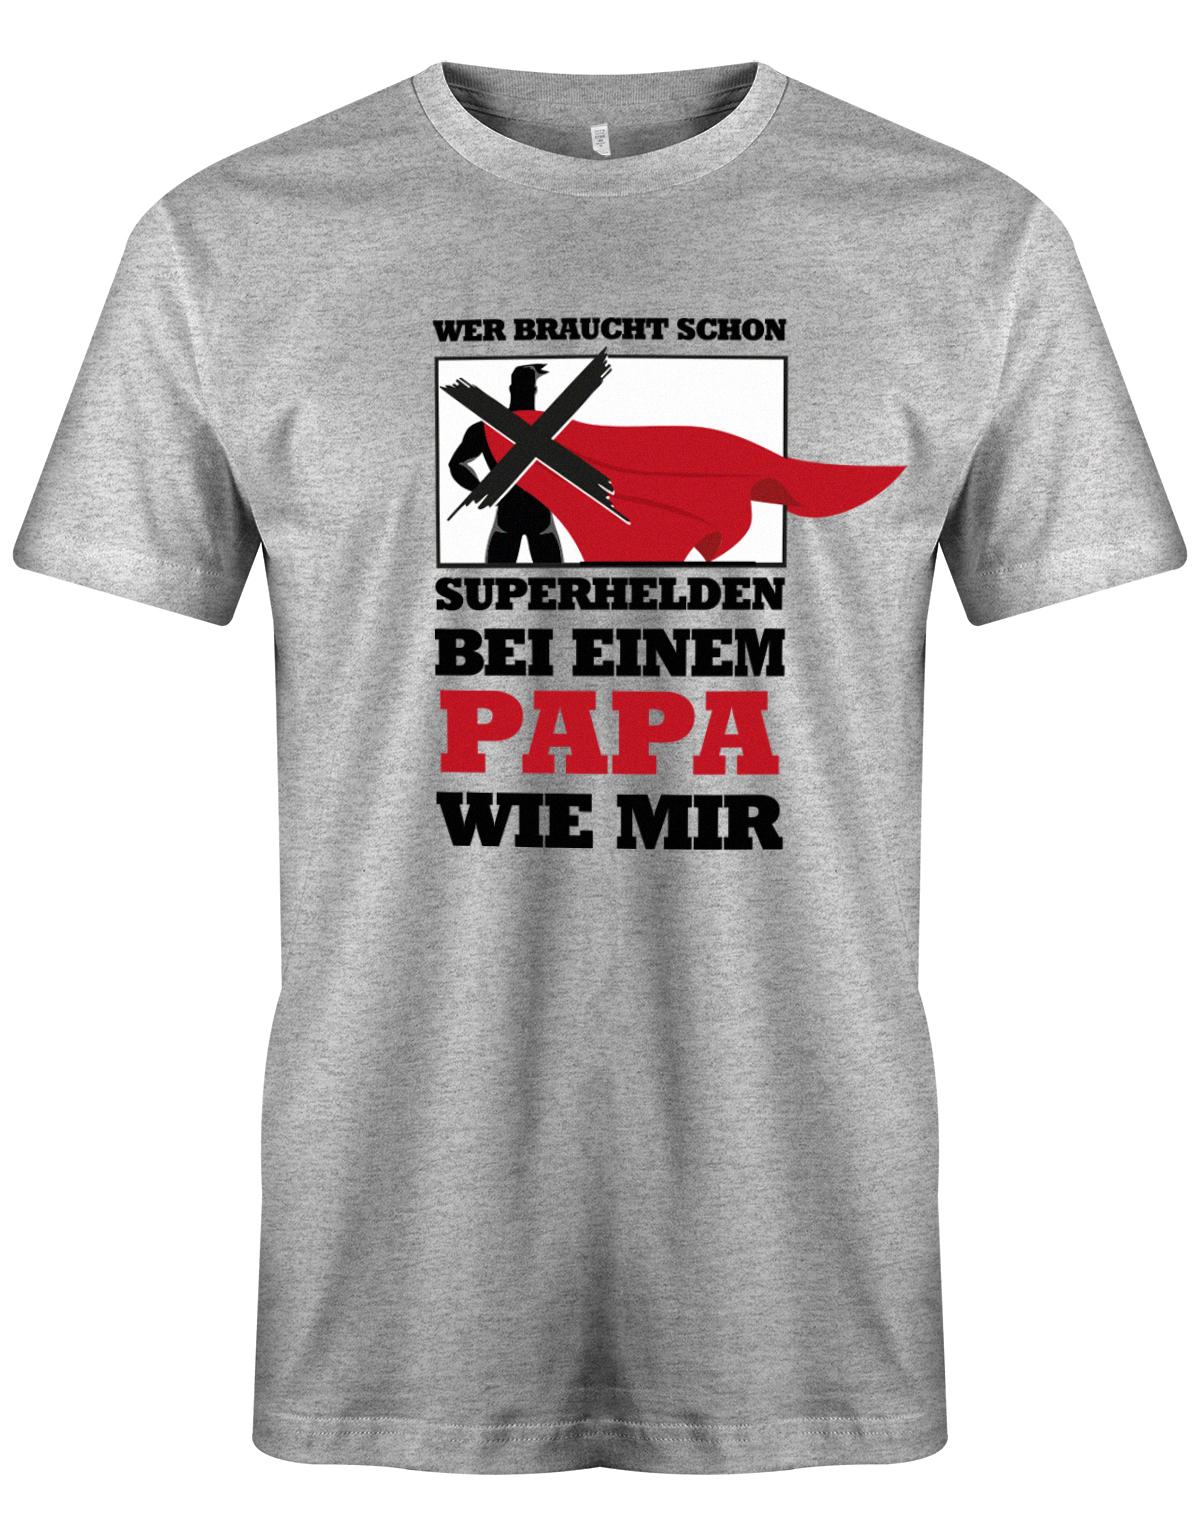 Wer-braucht-schon-Superhelden-bei-einem-Papa-wie-mir-herren-Shirt-Grau